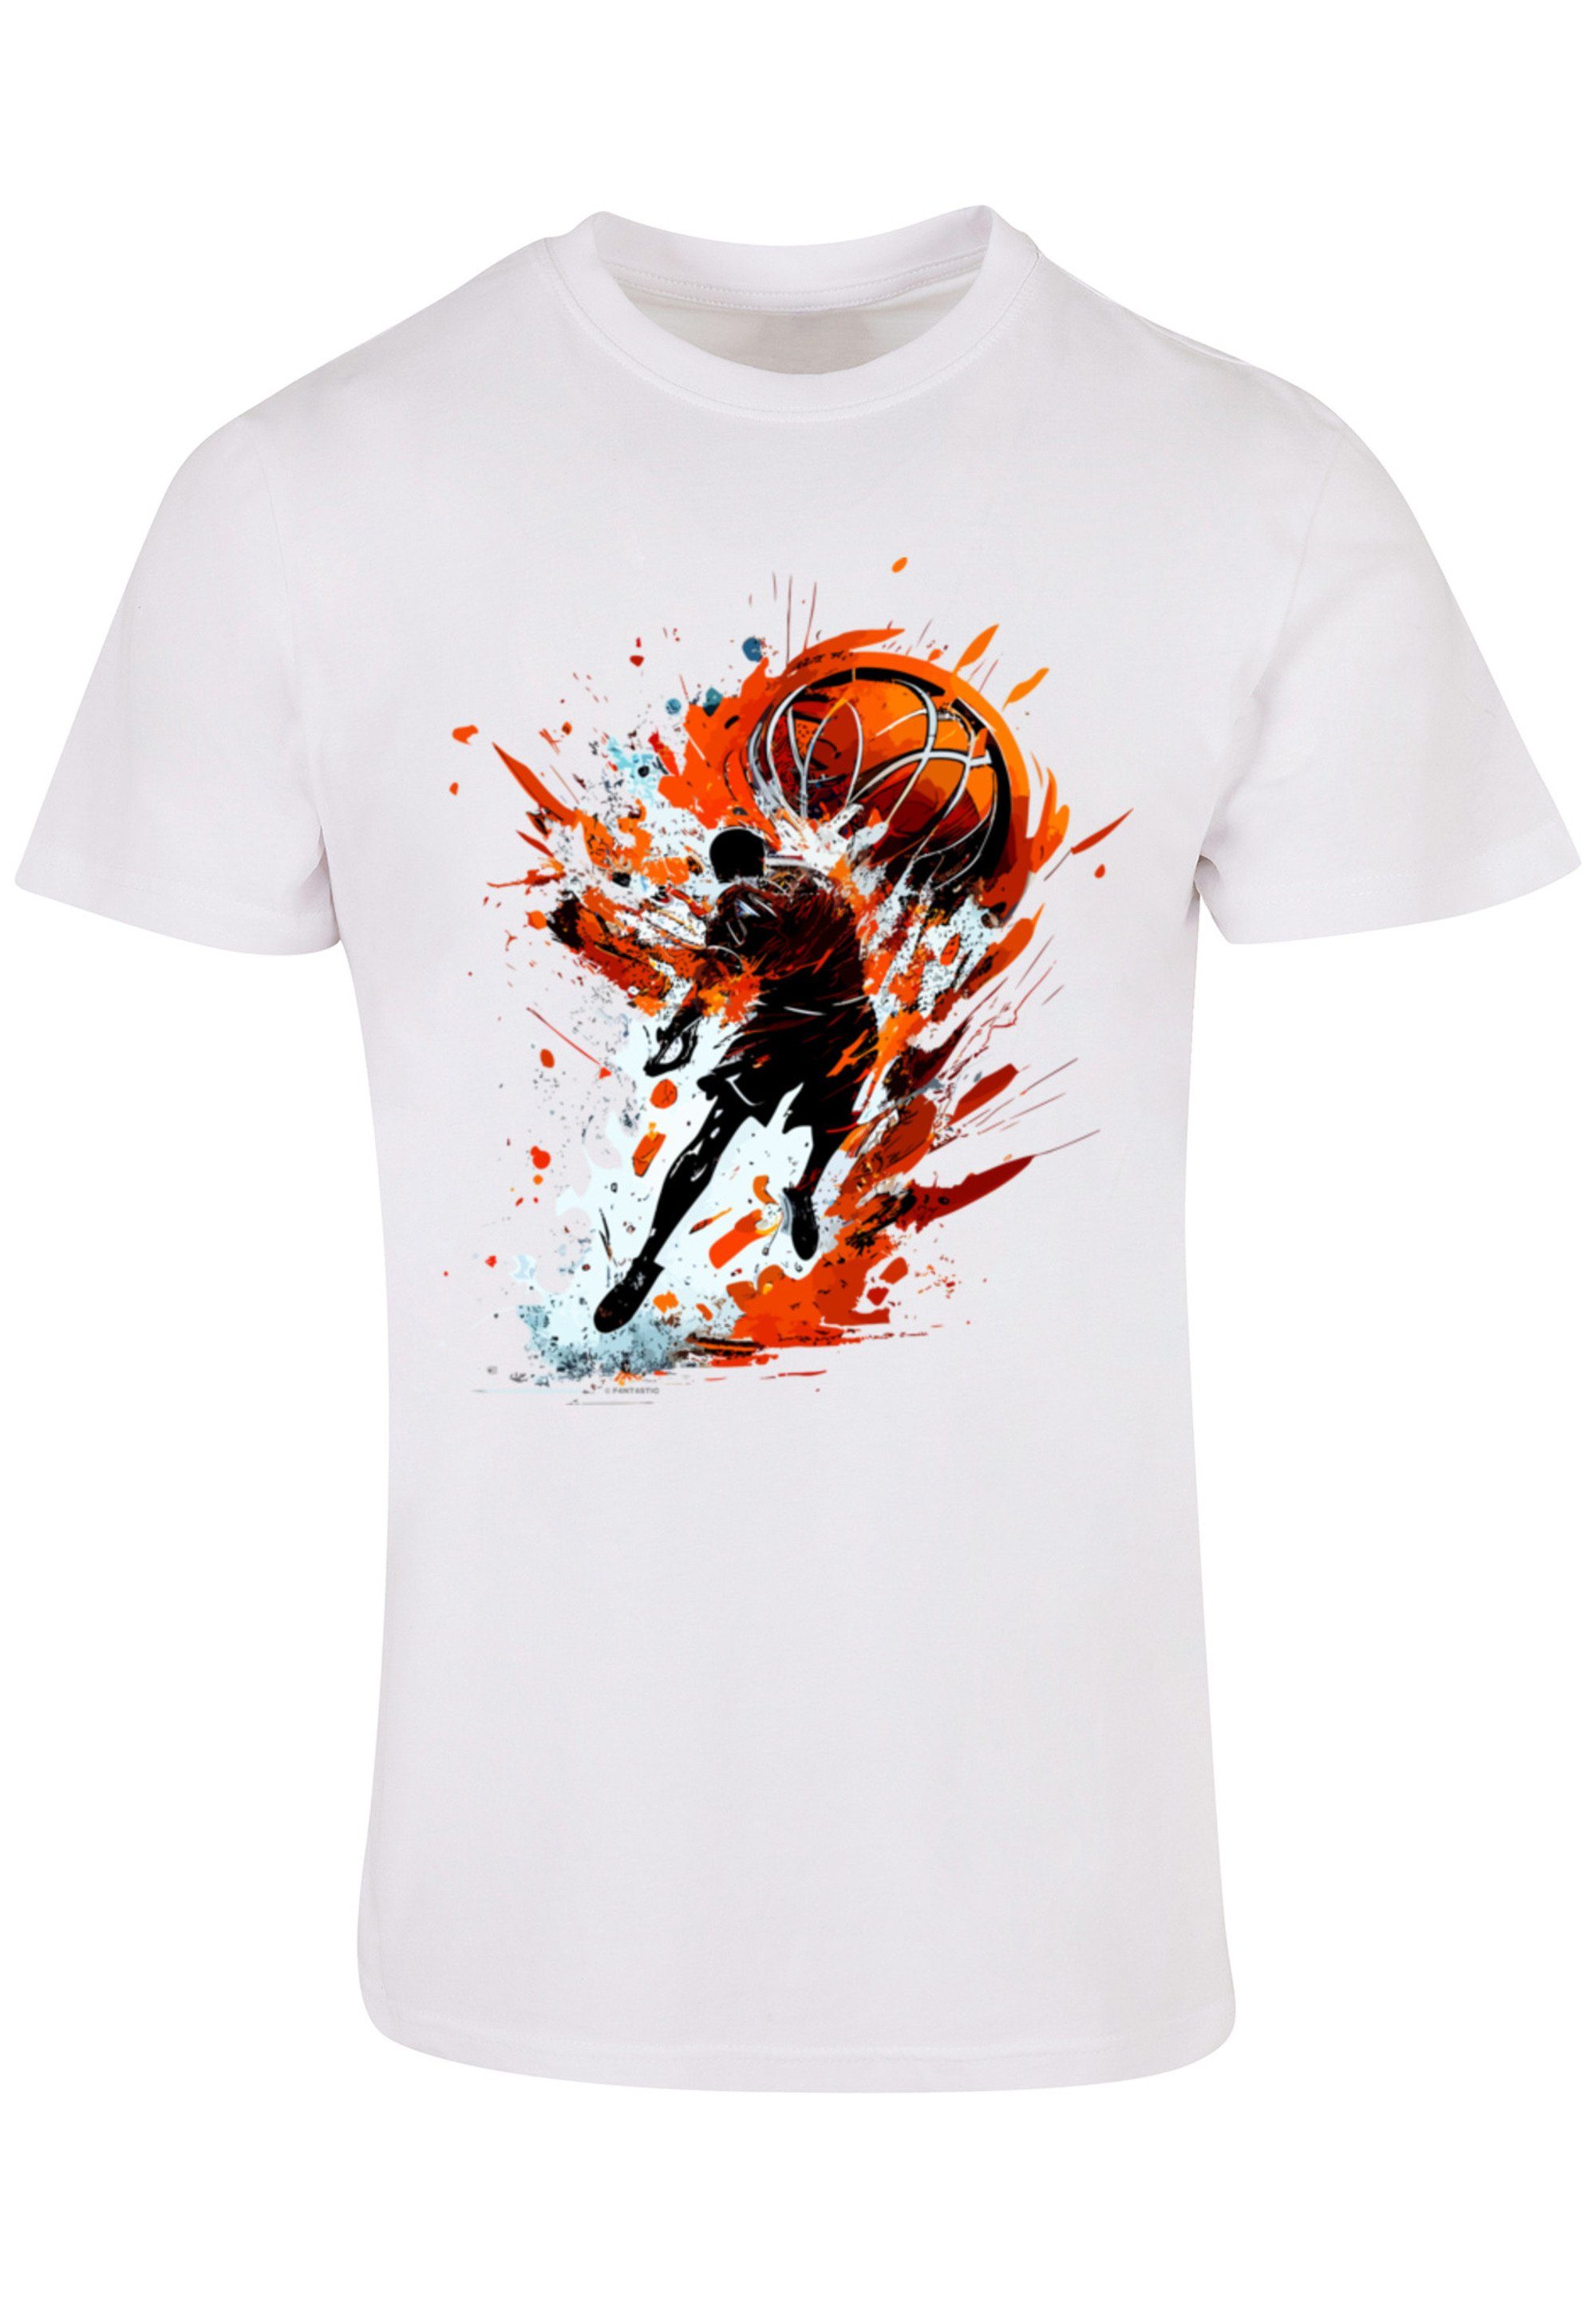 Sehr UNISEX Basketball Splash mit T-Shirt weicher hohem Tragekomfort Sport F4NT4STIC Print, Baumwollstoff